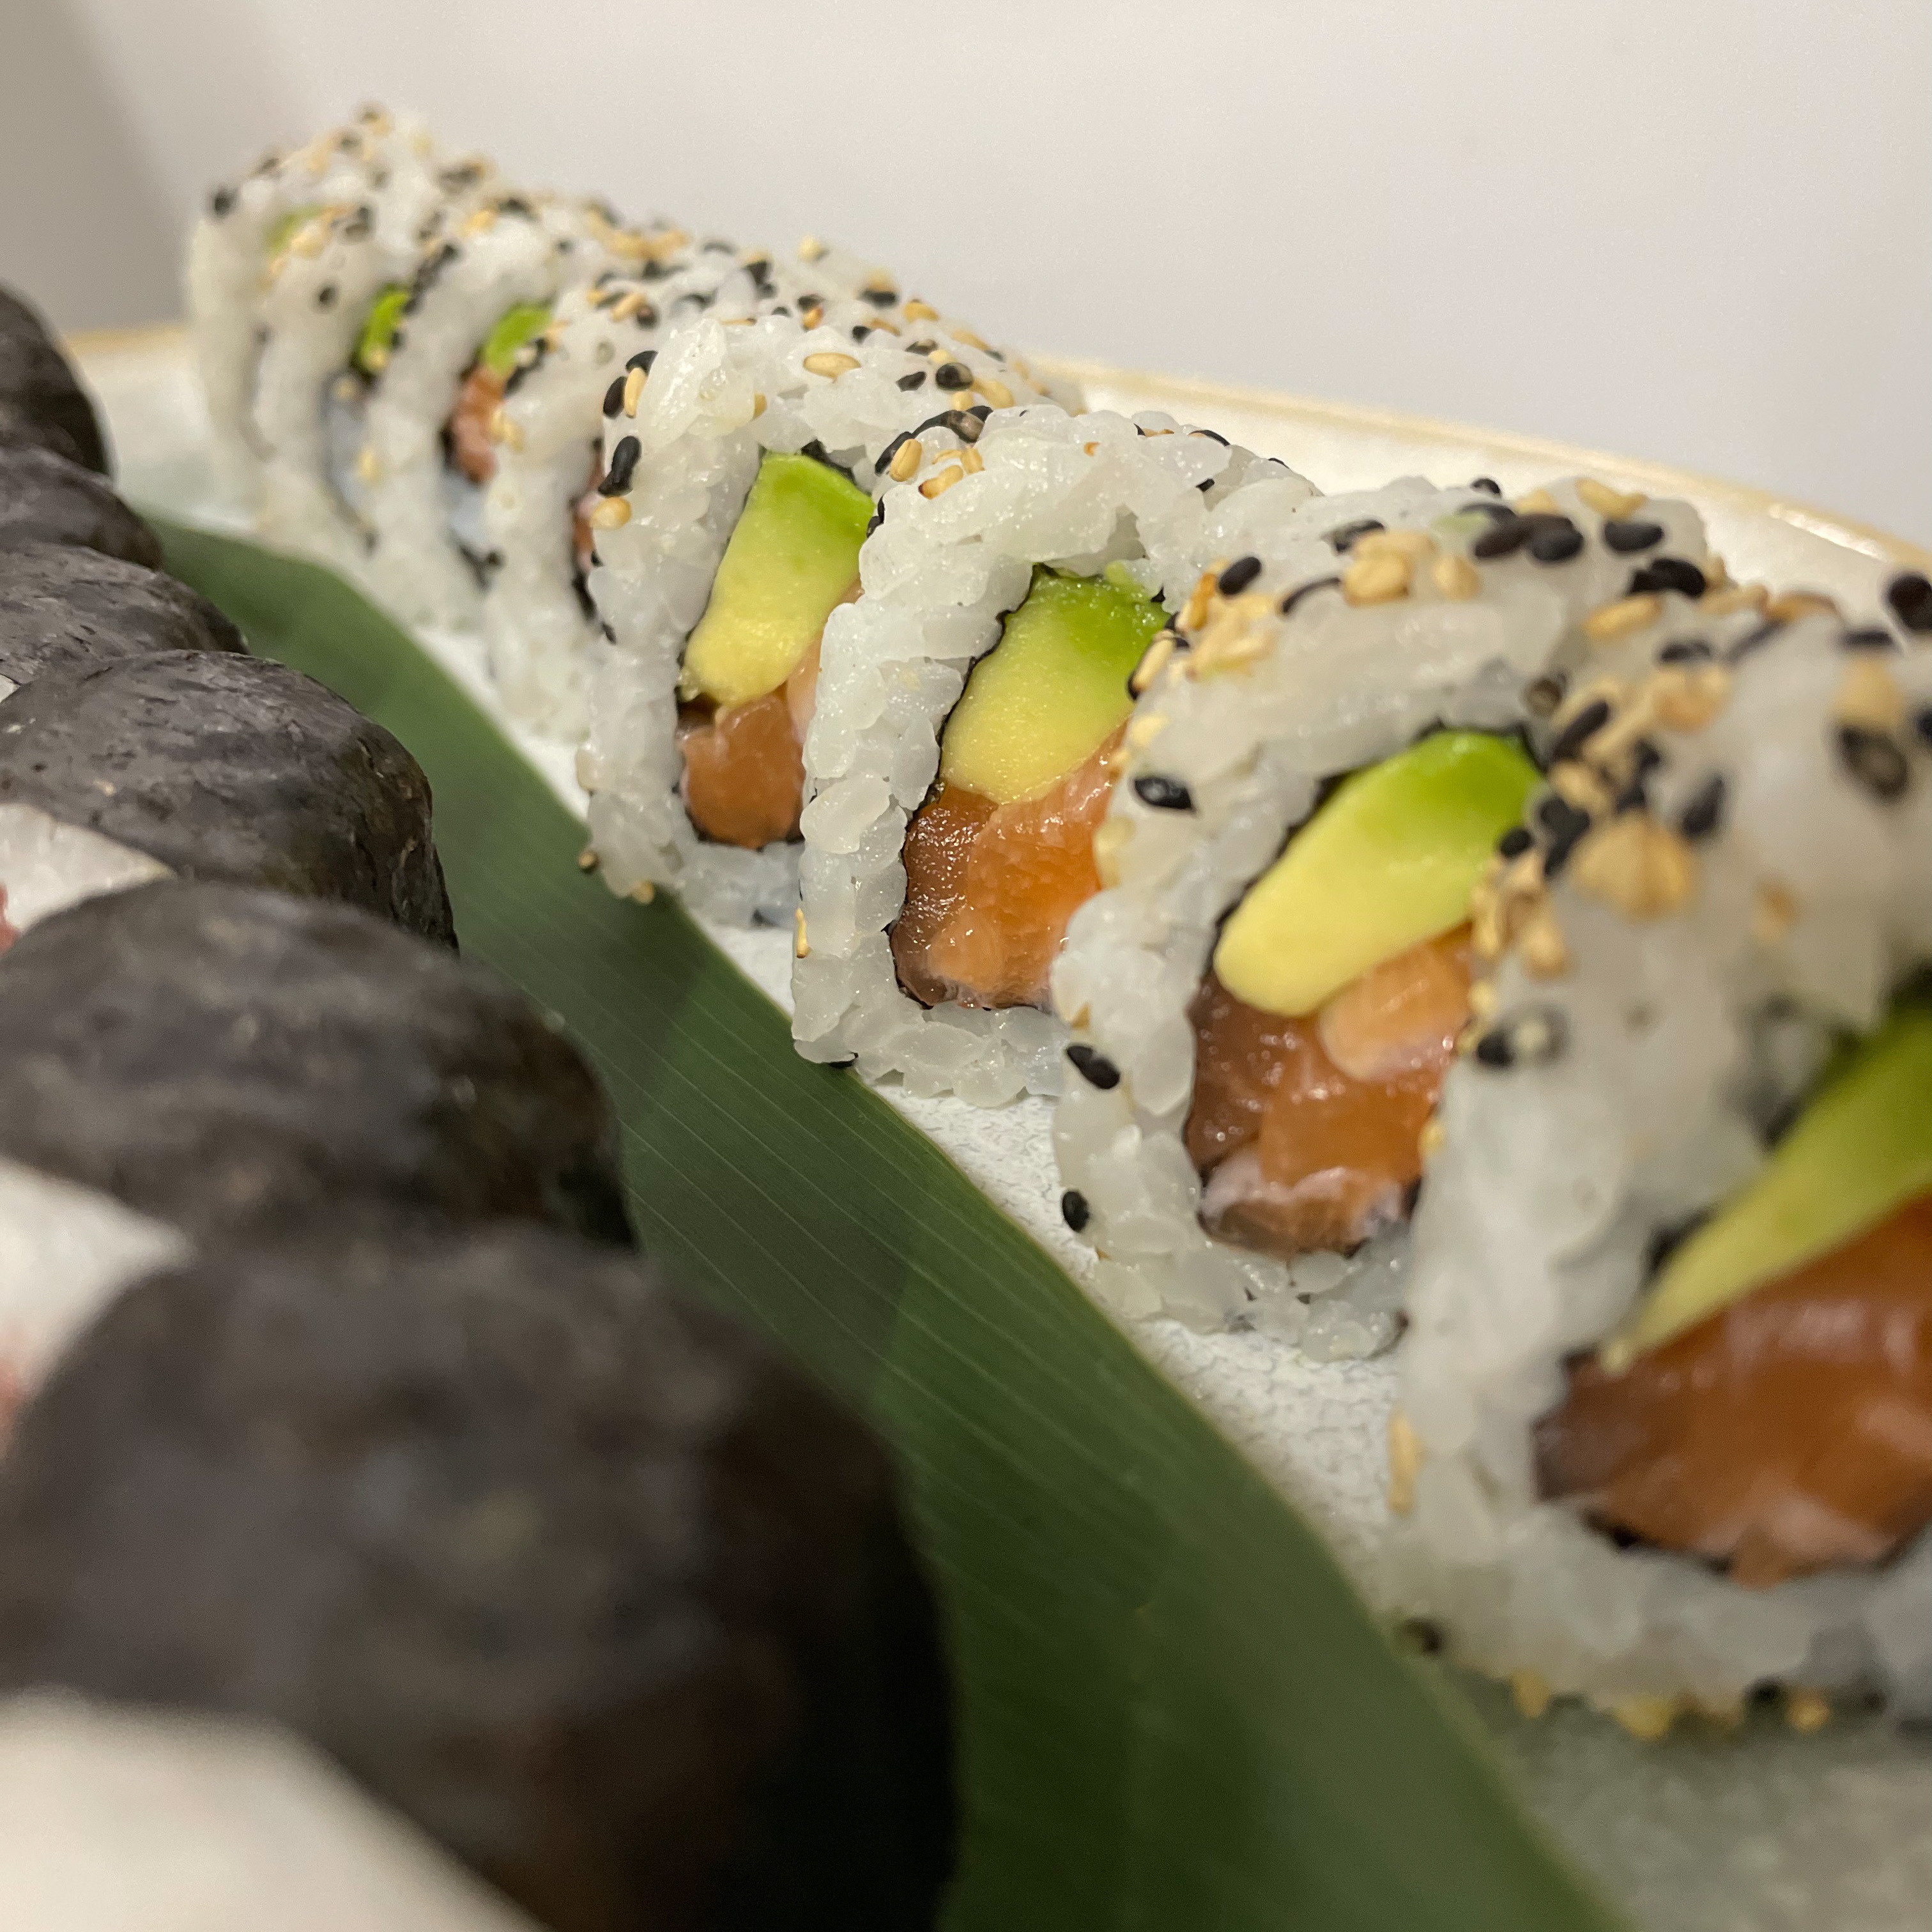 Original Sushi